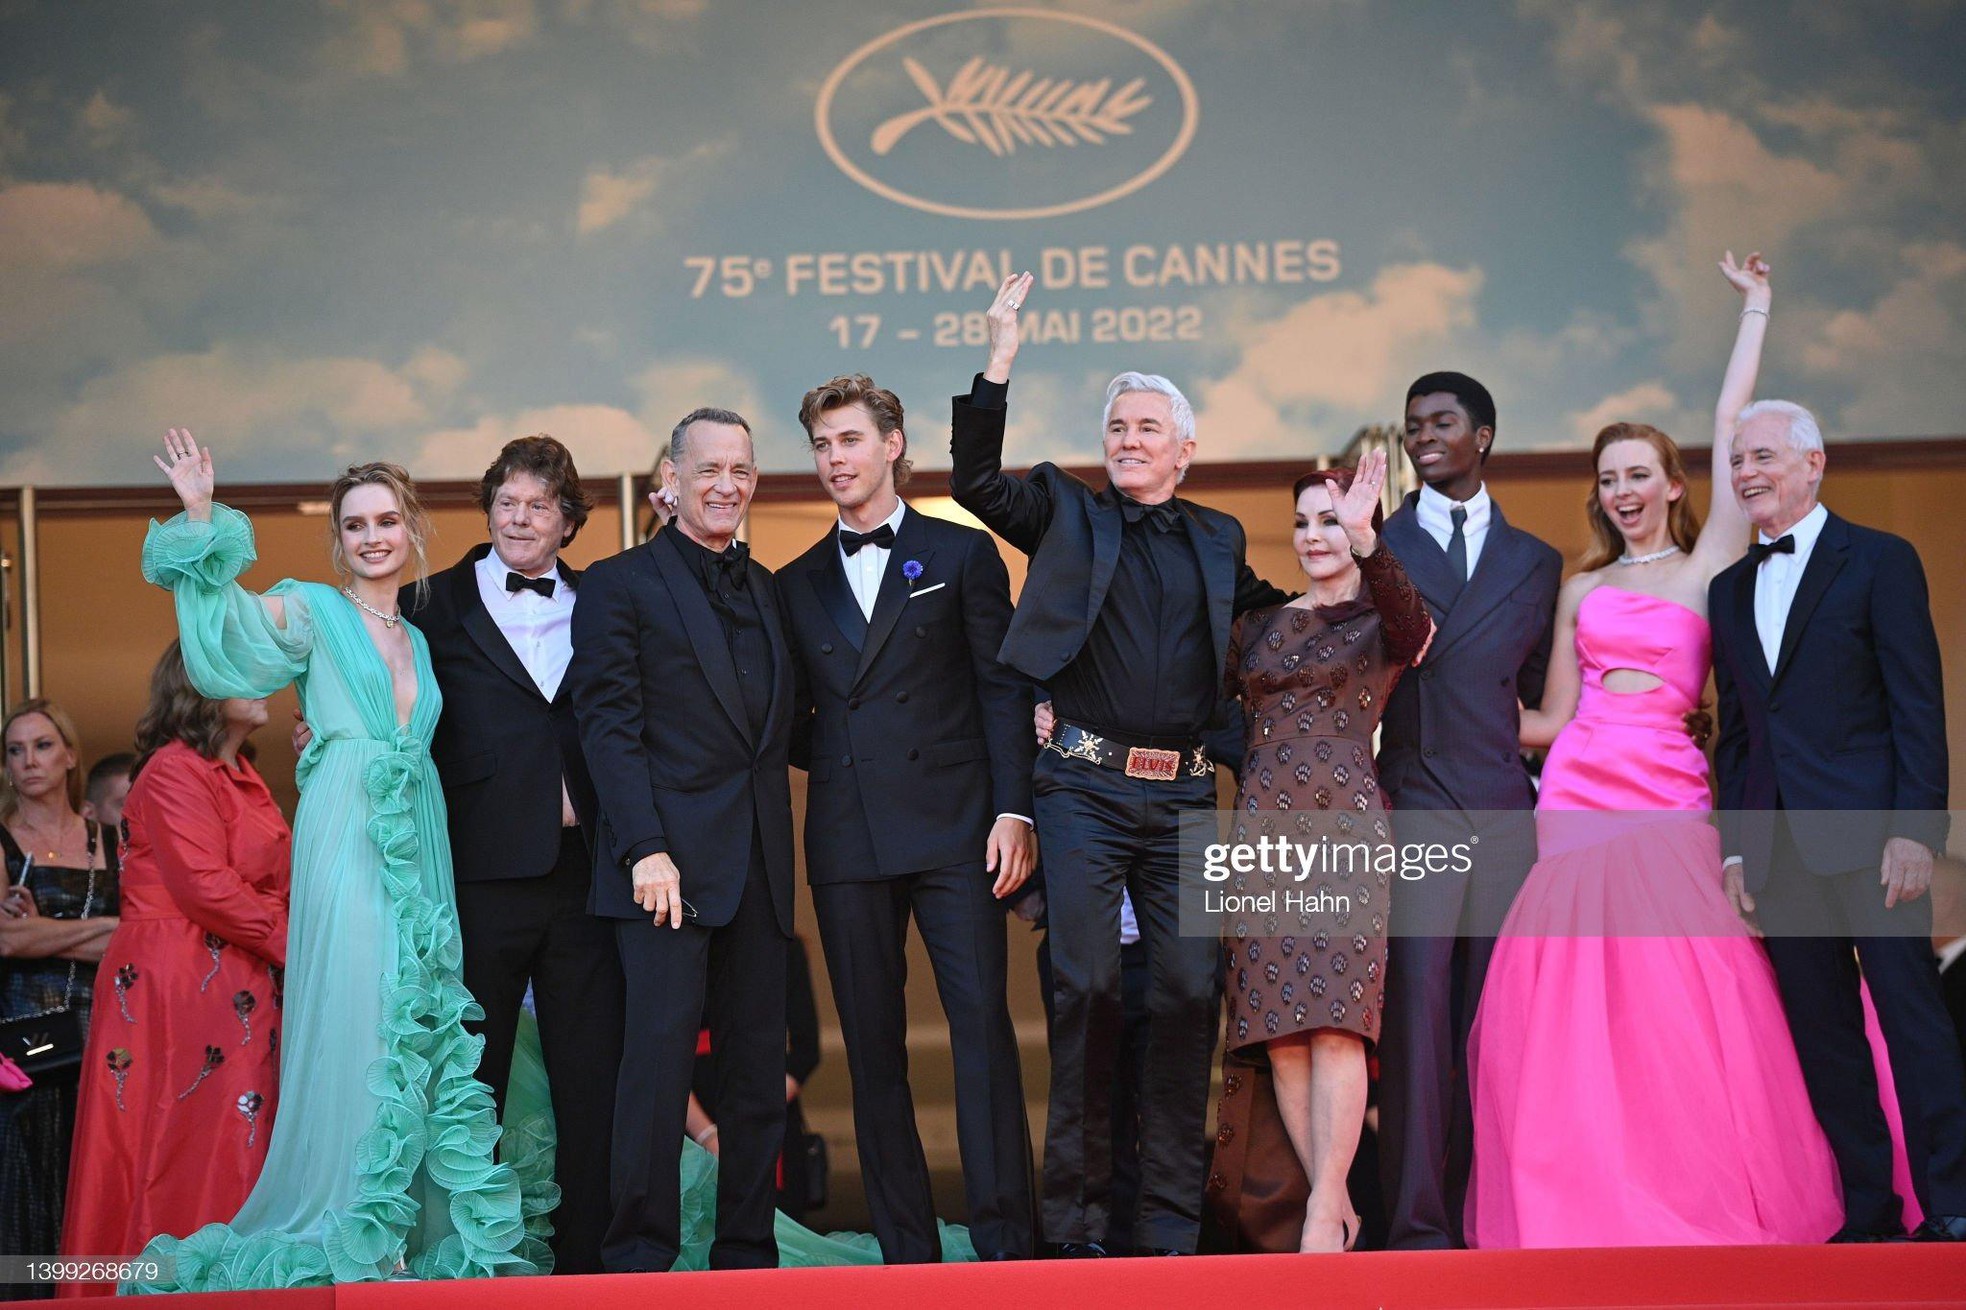 Cannes ngày 9: Dàn thiên thần nội y hở bạo trên thảm đỏ - Ảnh 1.